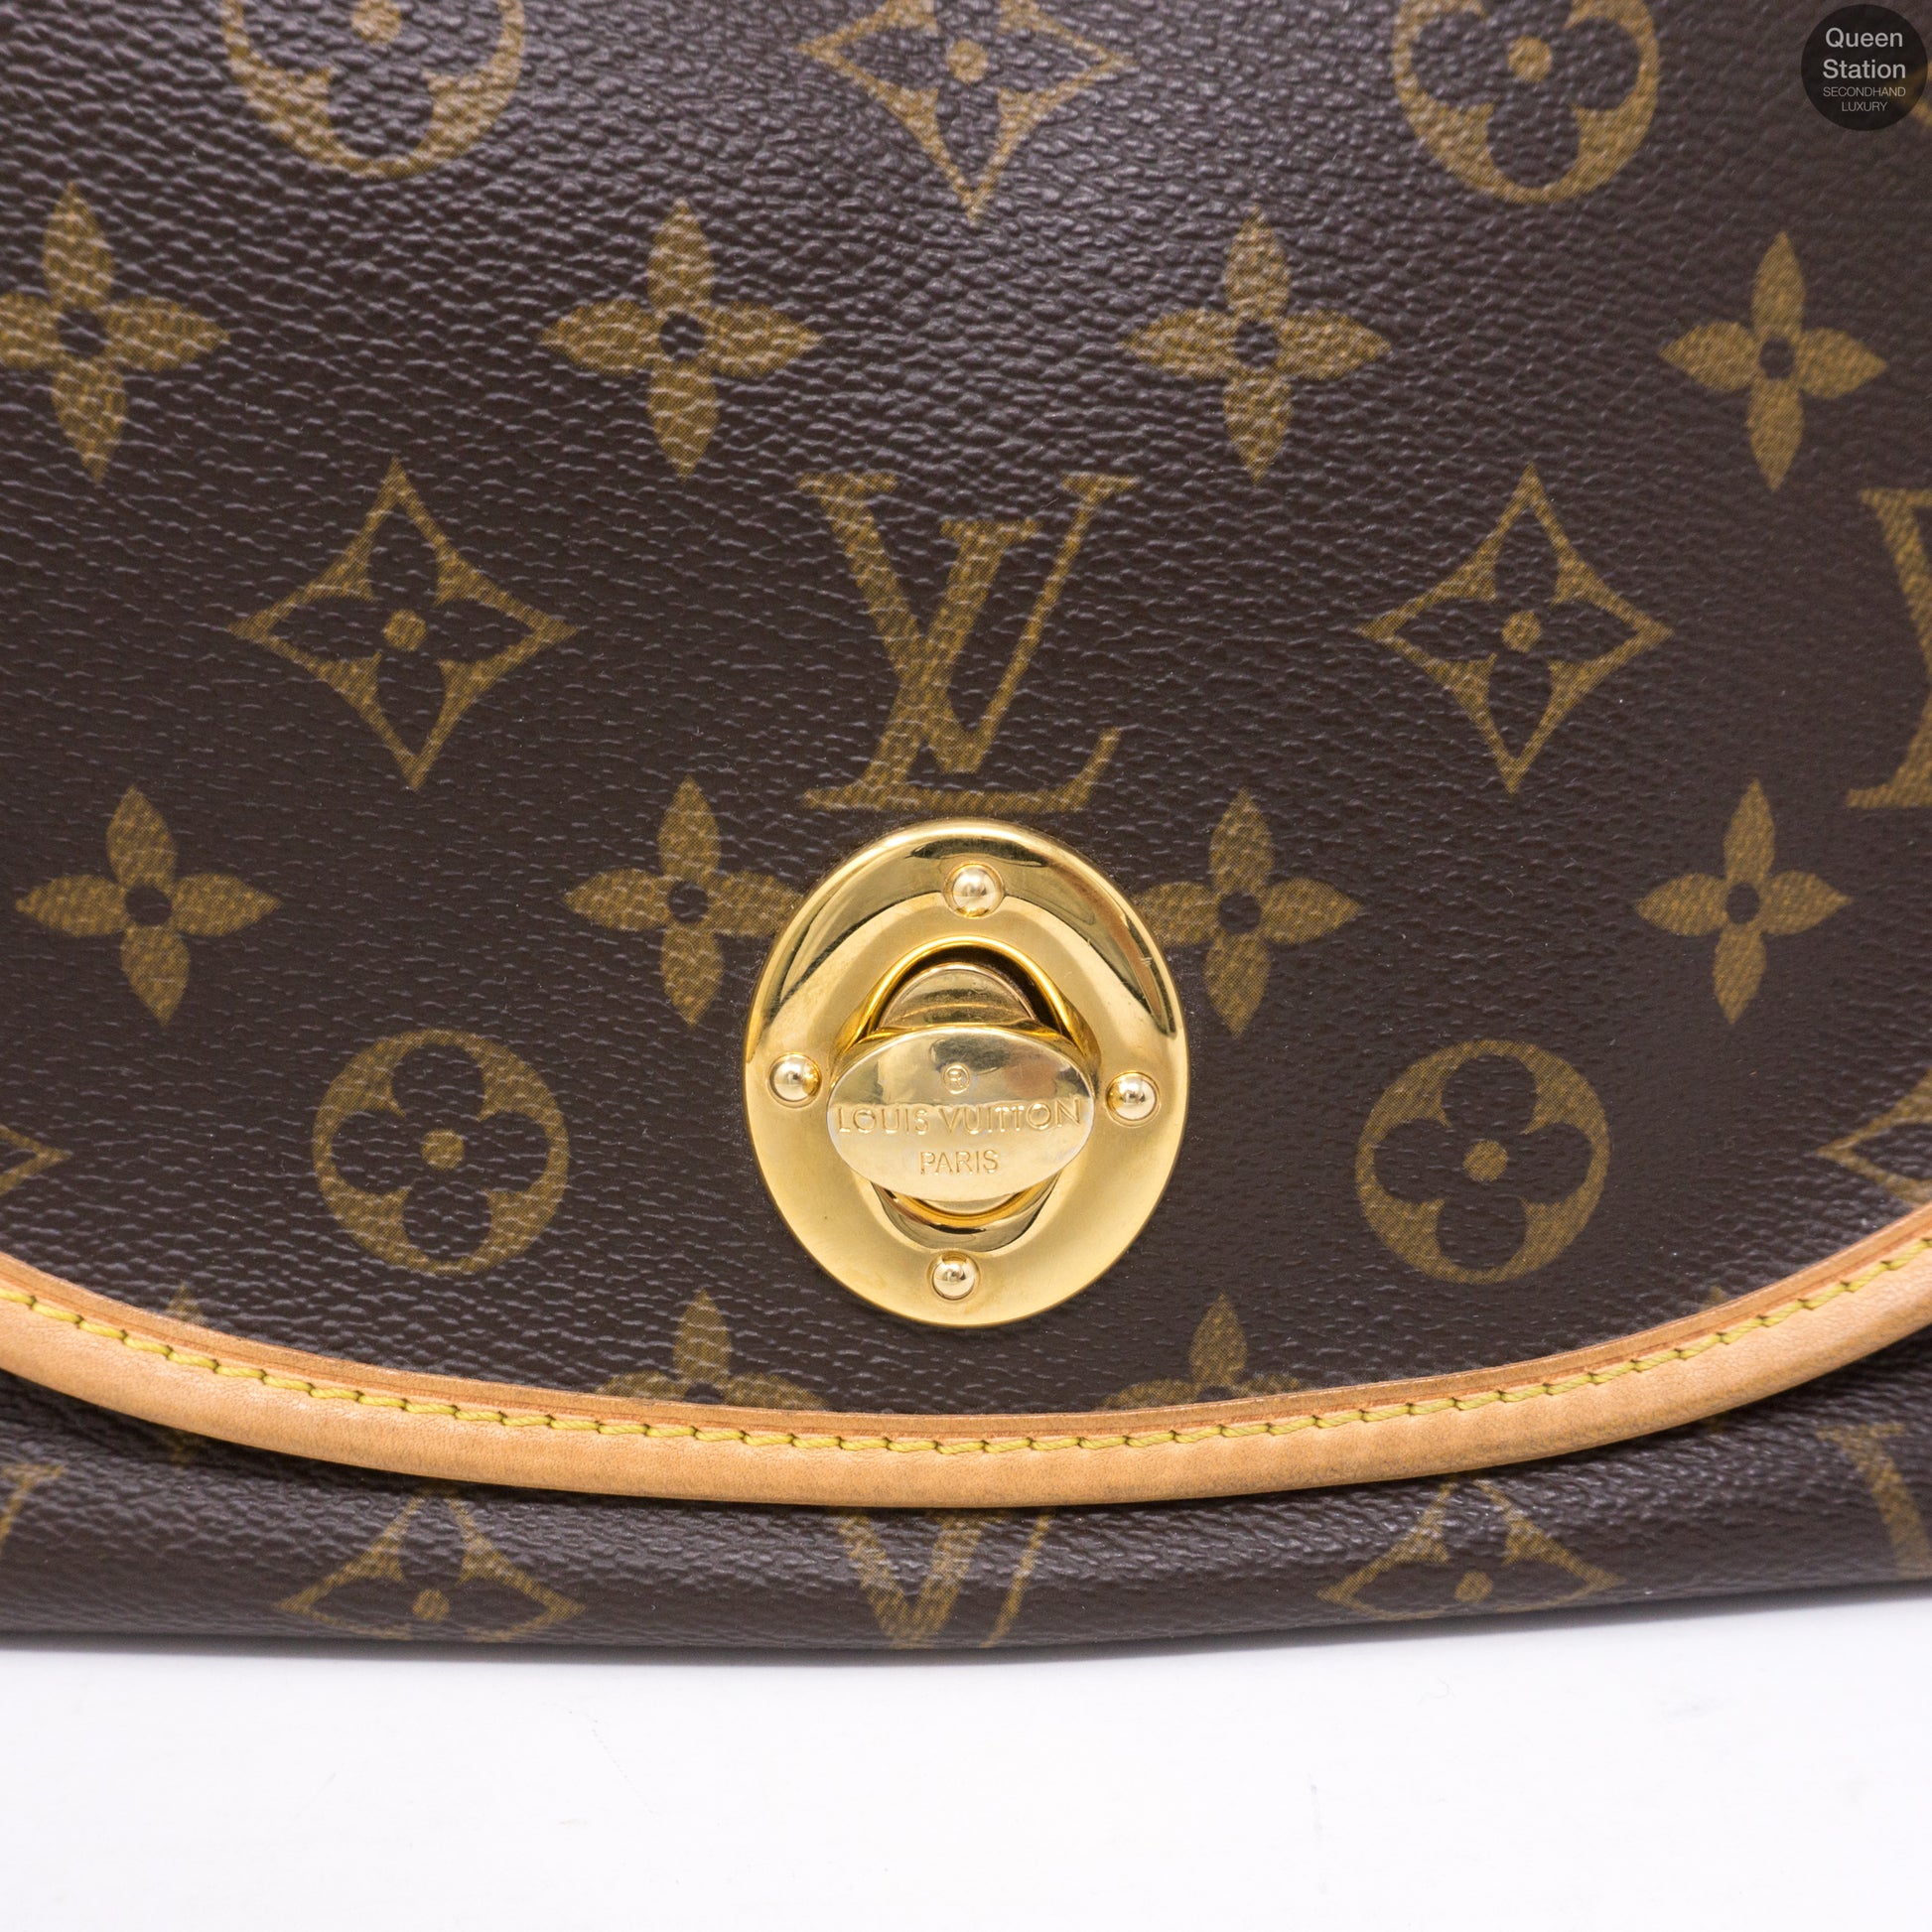 Louis Vuitton, Bags, Authentic Louis Vuitton Tulum Gm